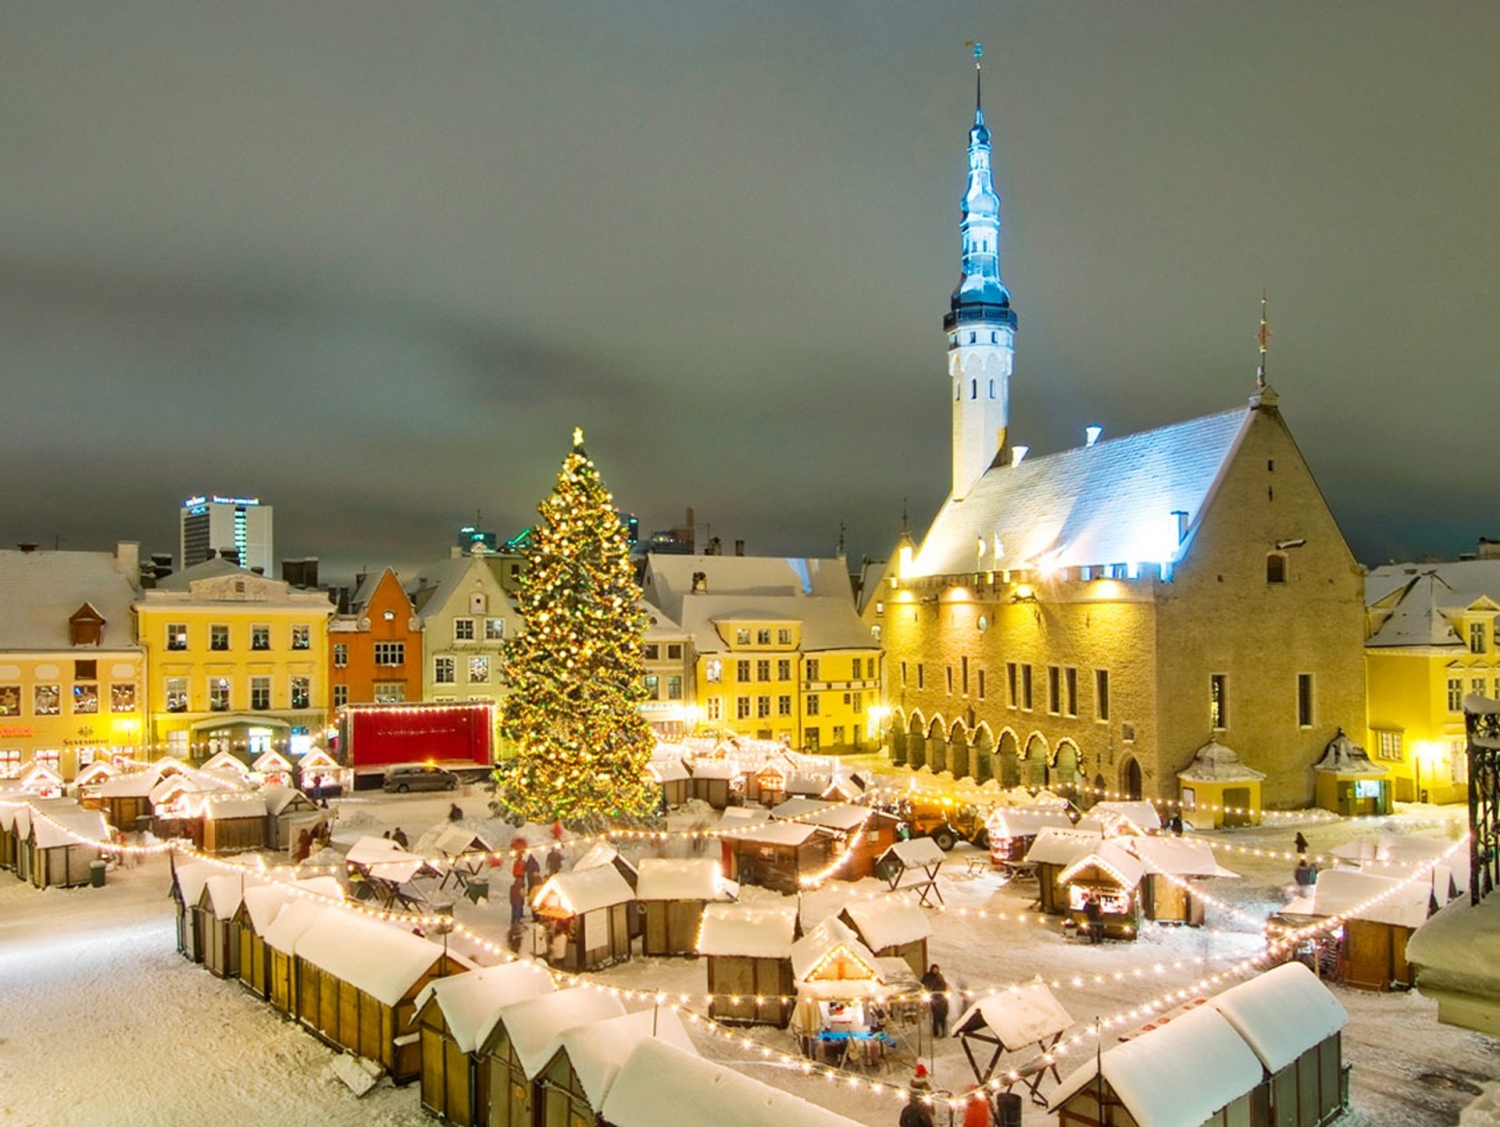 Khám phá những khu chợ Giáng sinh truyền thống ở châu Âu